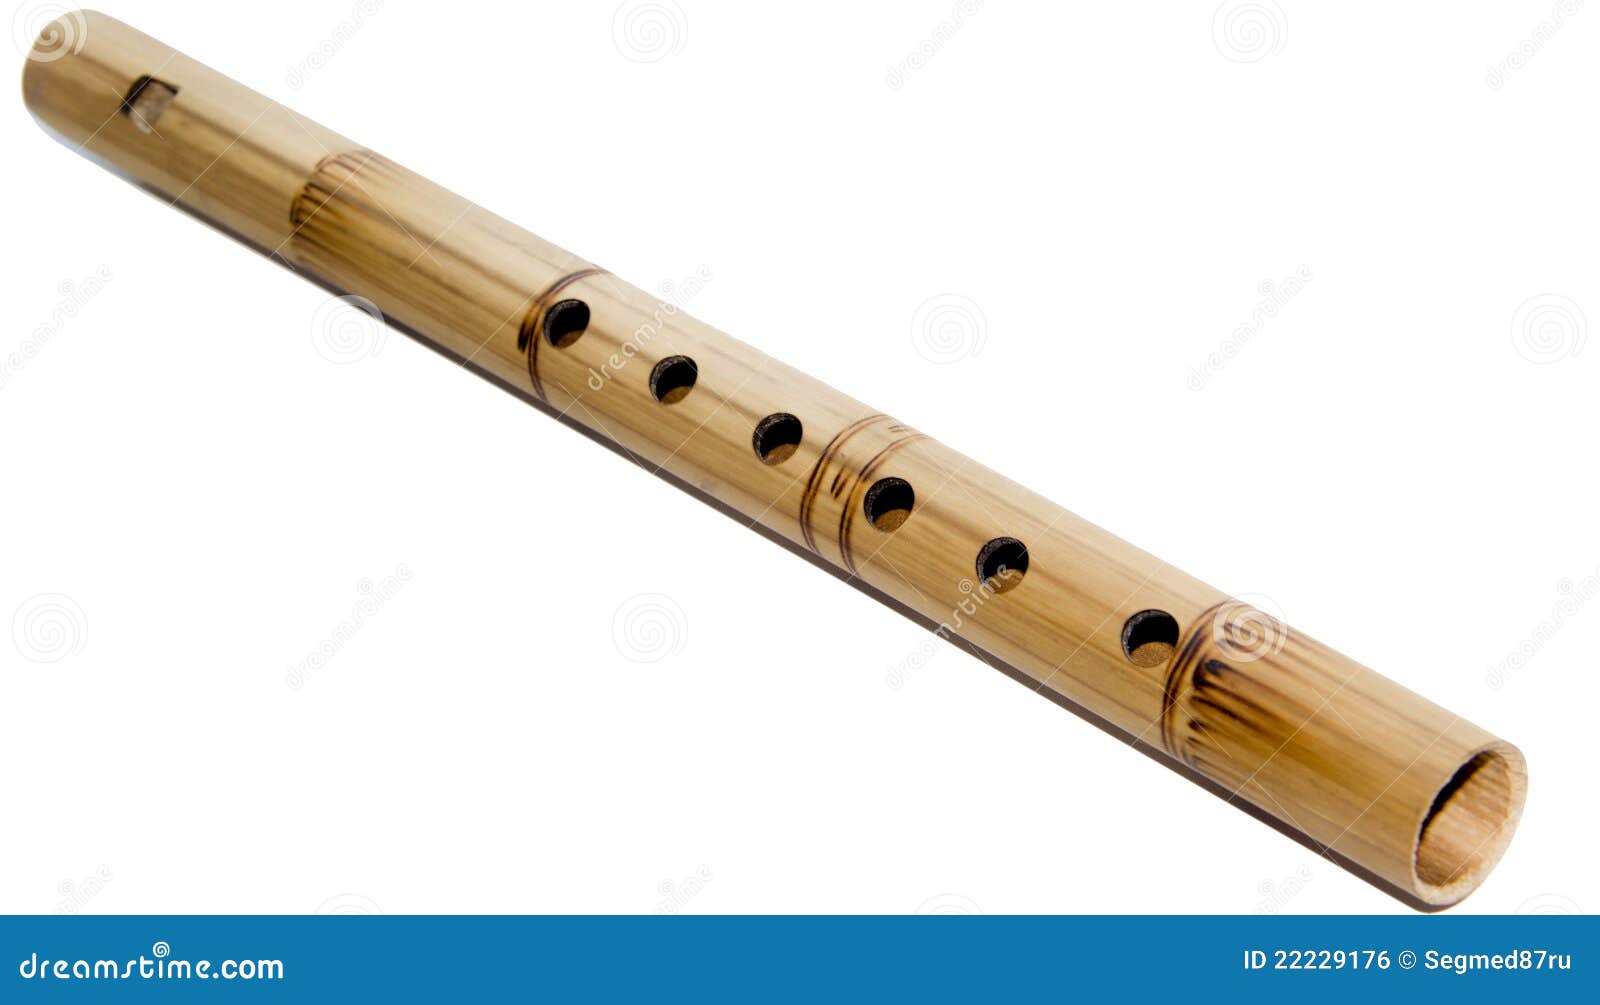 Flauta De Bambú Imagen de archivo libre de regalías - Imagen: 22229176